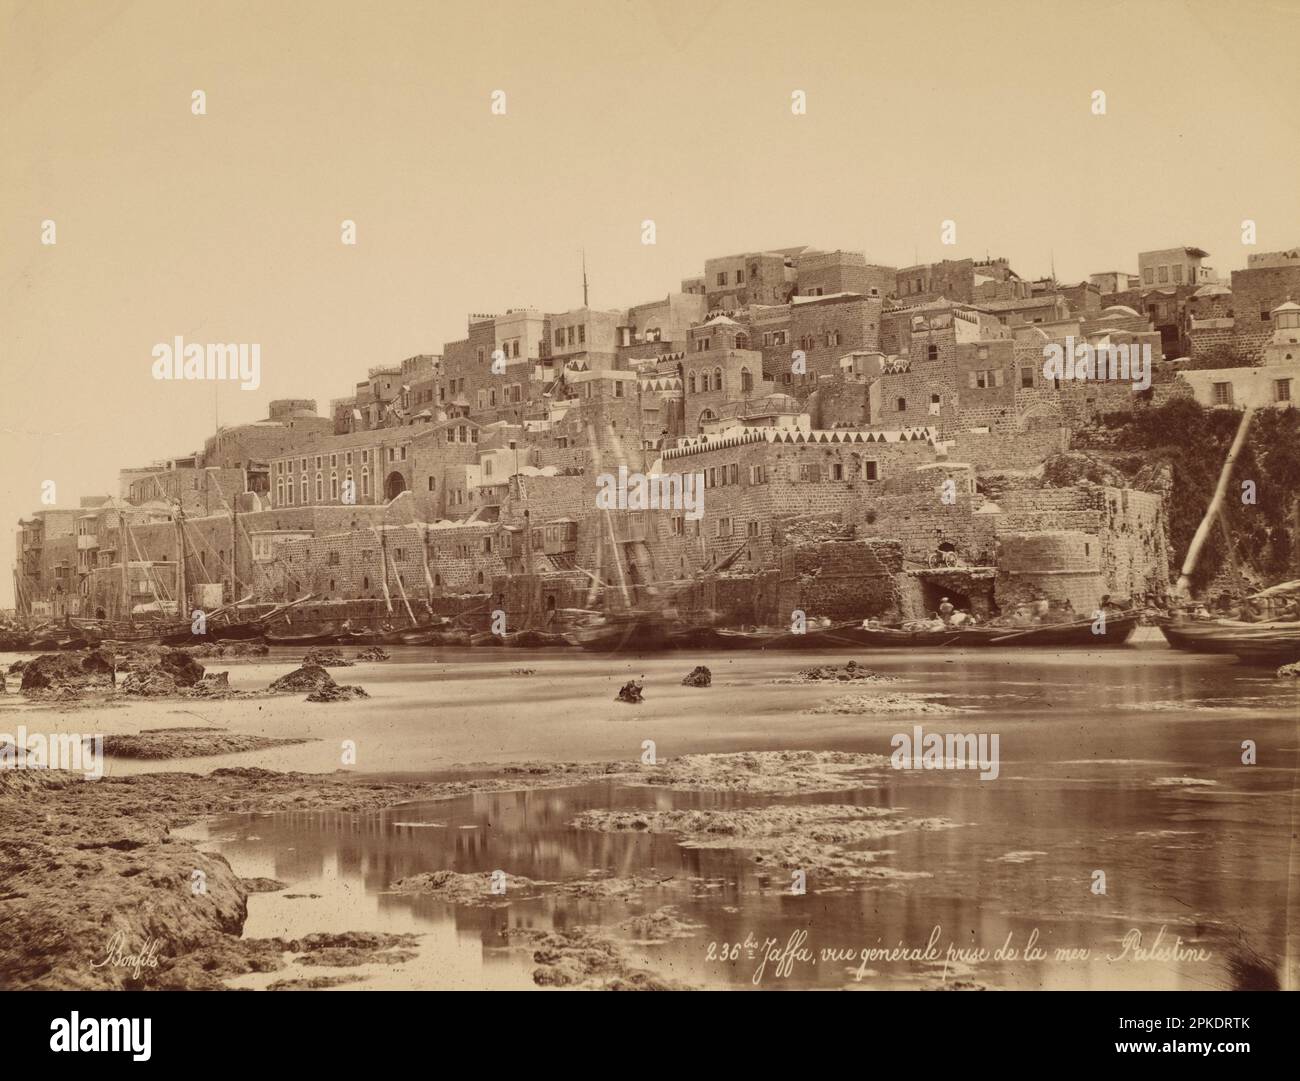 Jaffa, Vue Générale Prise de la Mer - Palestine 1867 - 1870 by Felix Bonfils Stock Photo